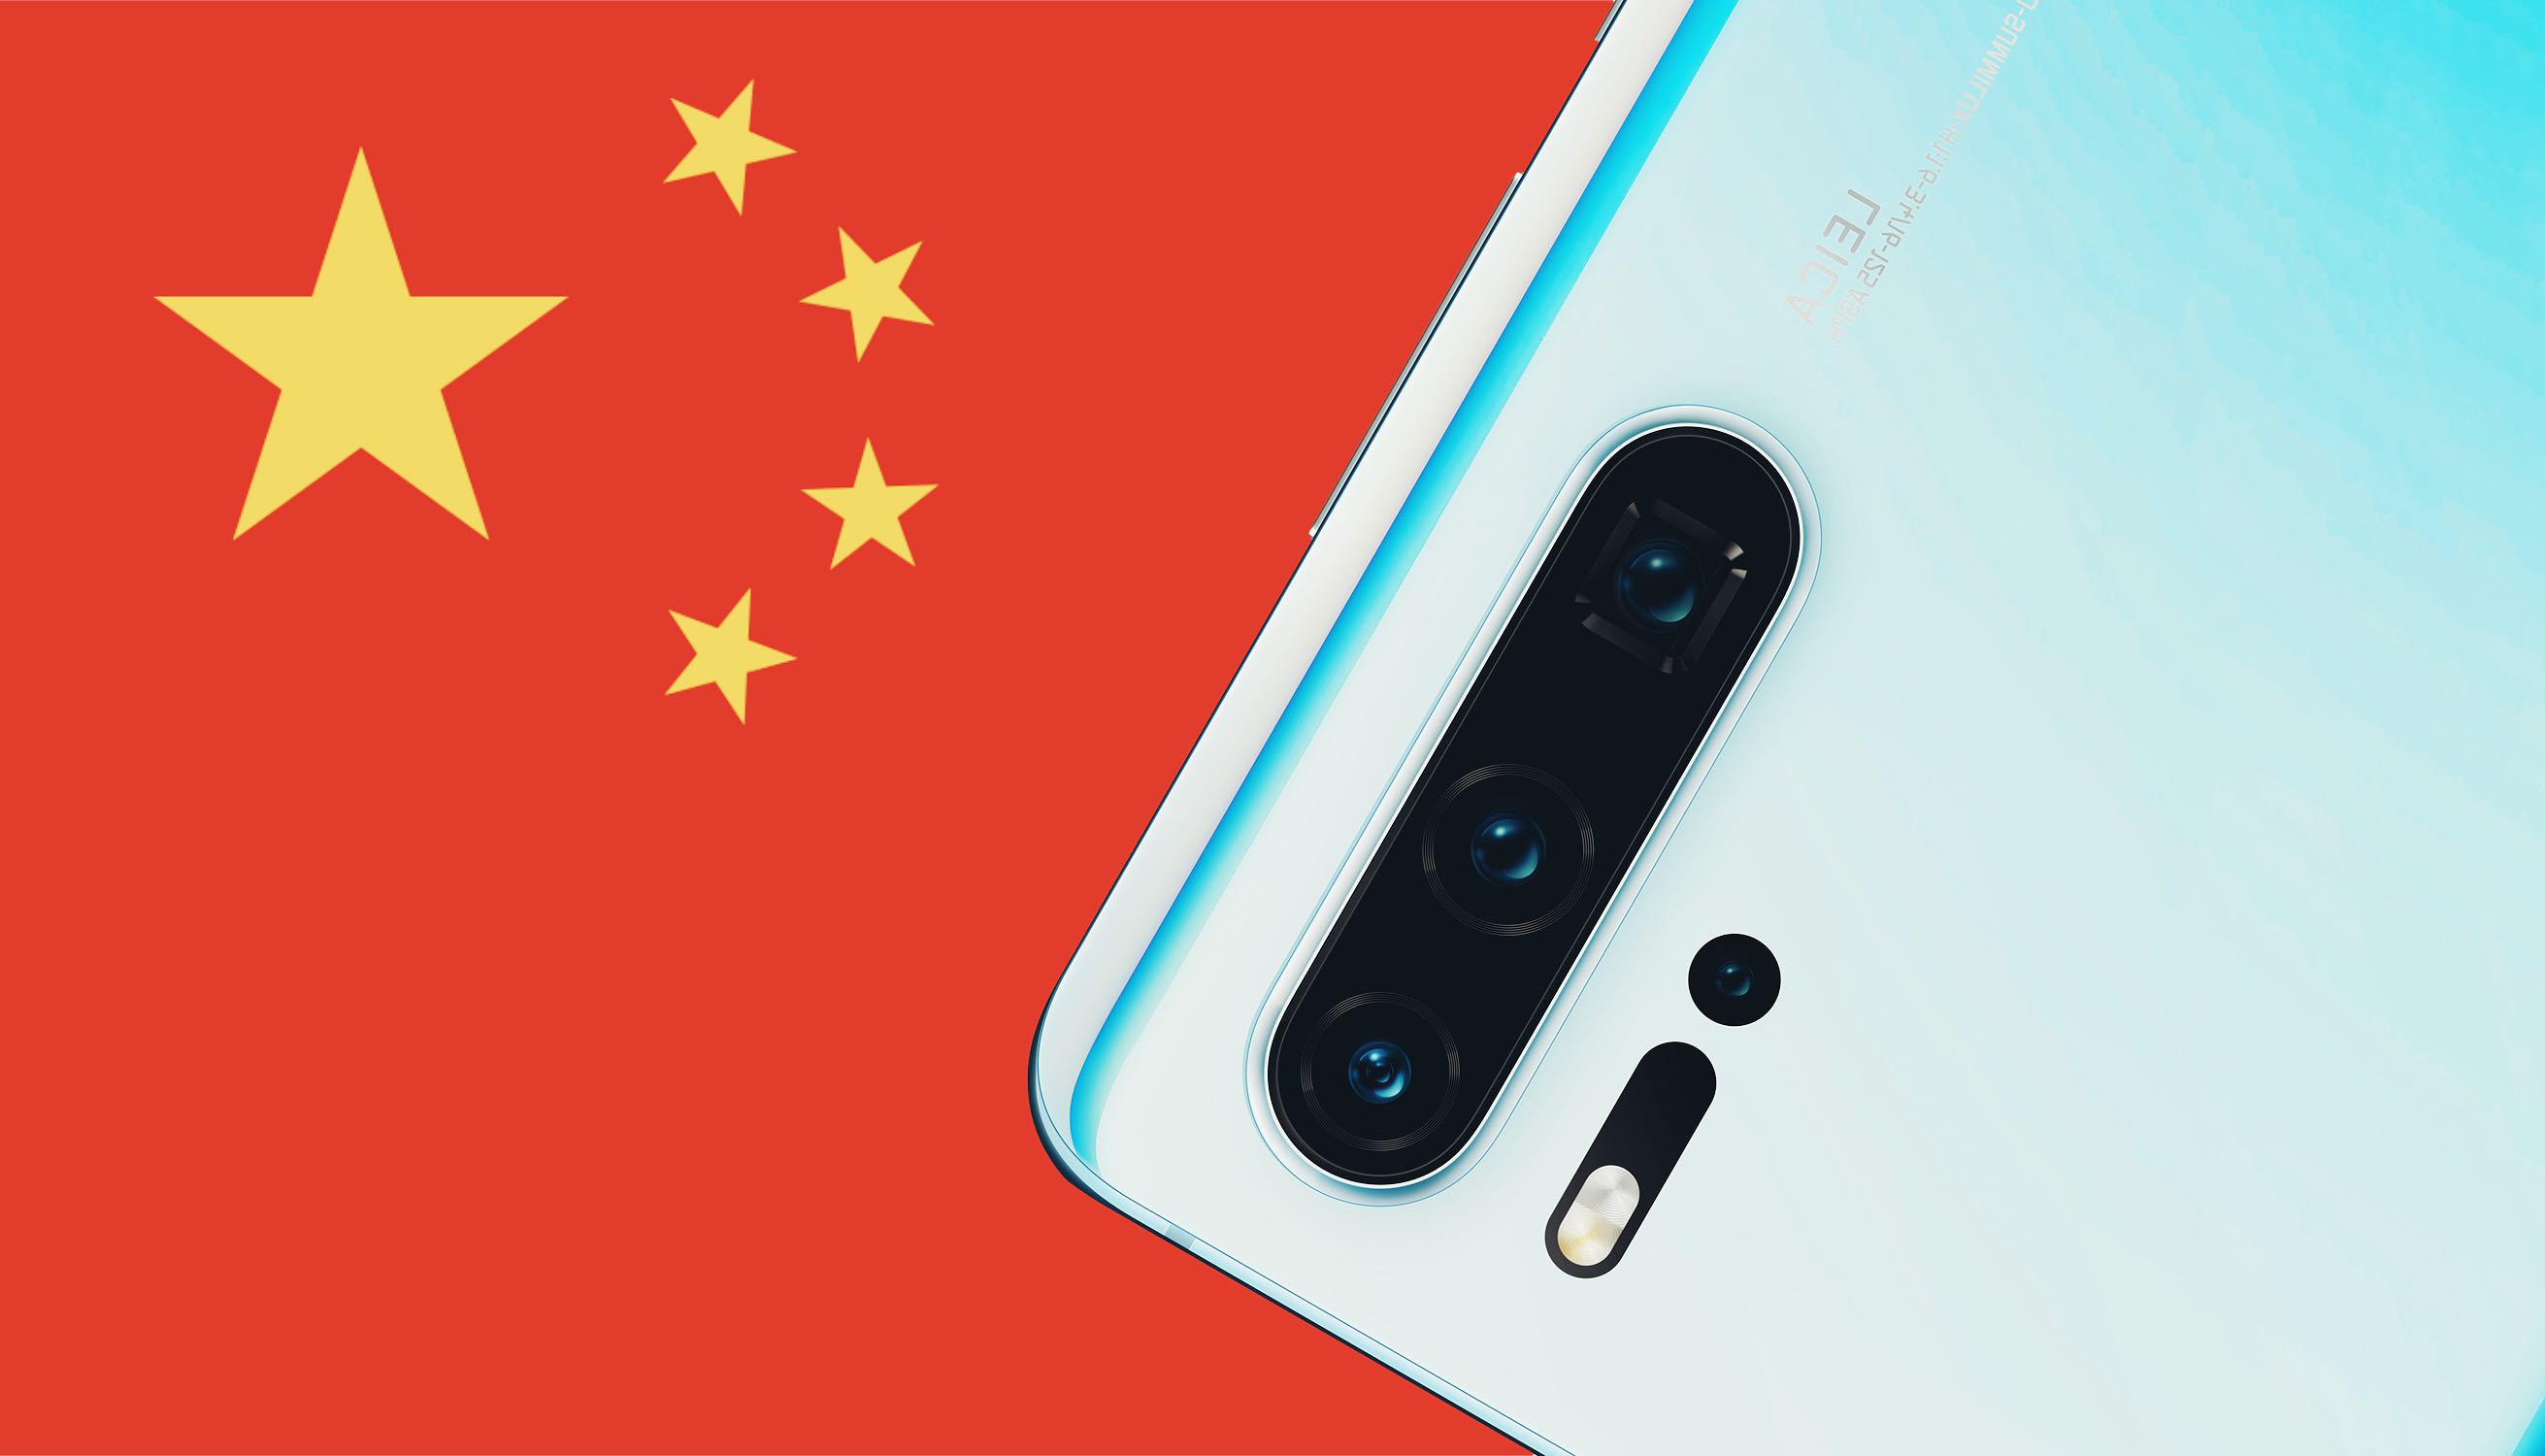 Huawei P30 Pro тайно отправляет данные китайским спецслужбам